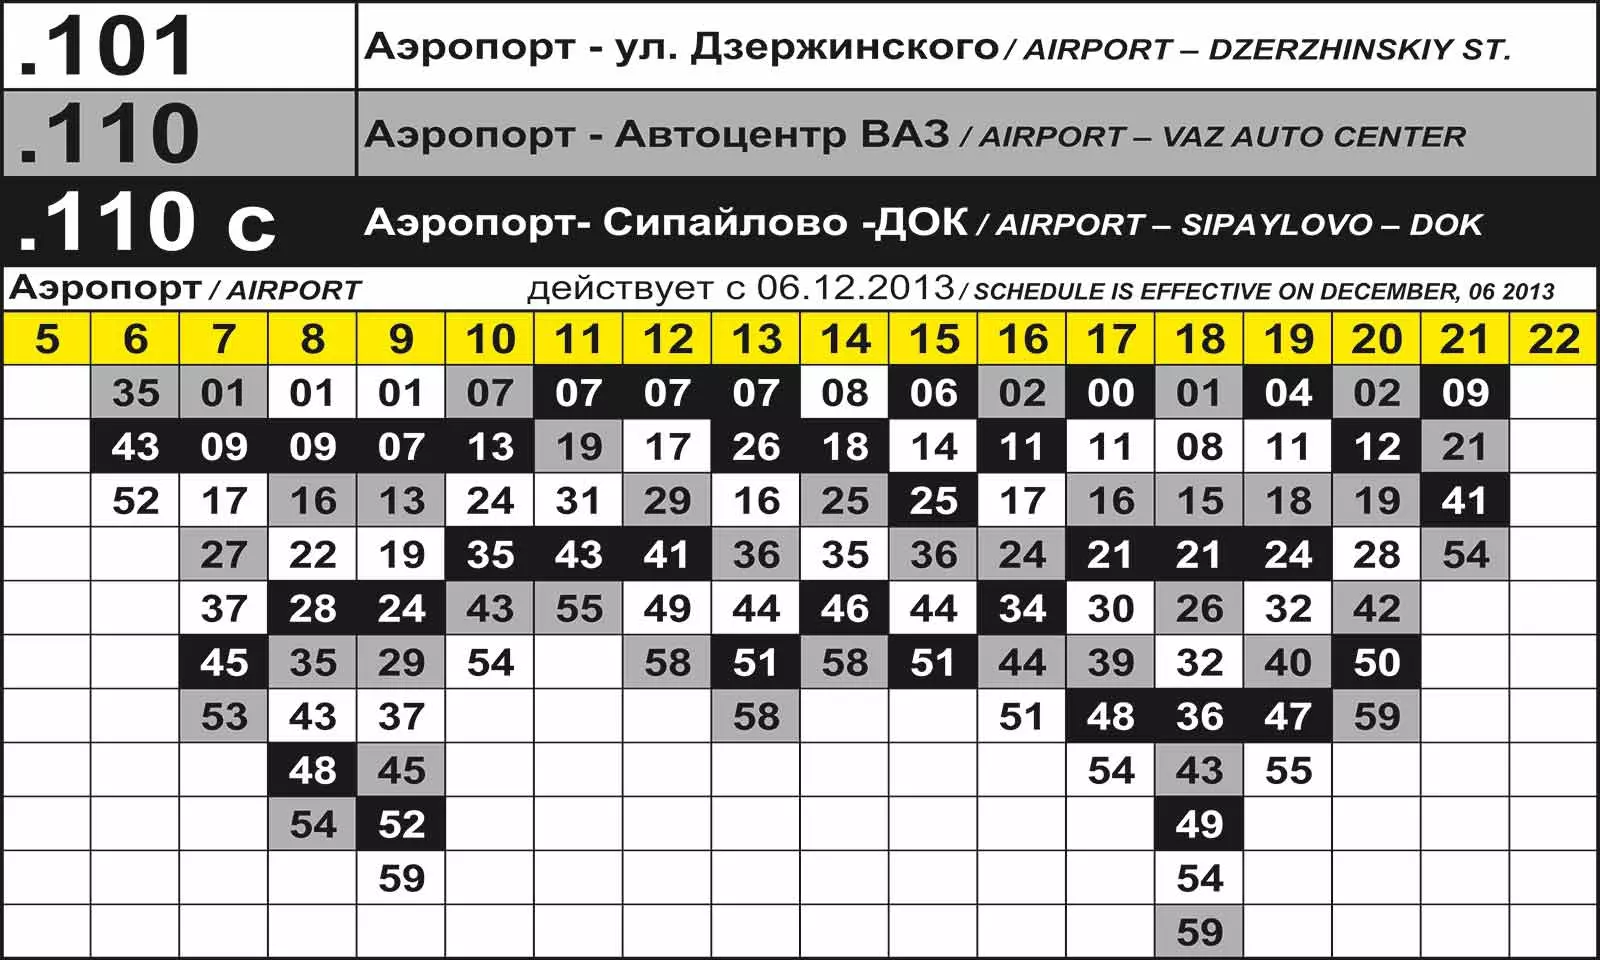 Как добраться из уфы в нефтекамск: автобус, маршрутка, такси, машина. расстояние, цены на билеты и расписание 2022 на туристер.ру